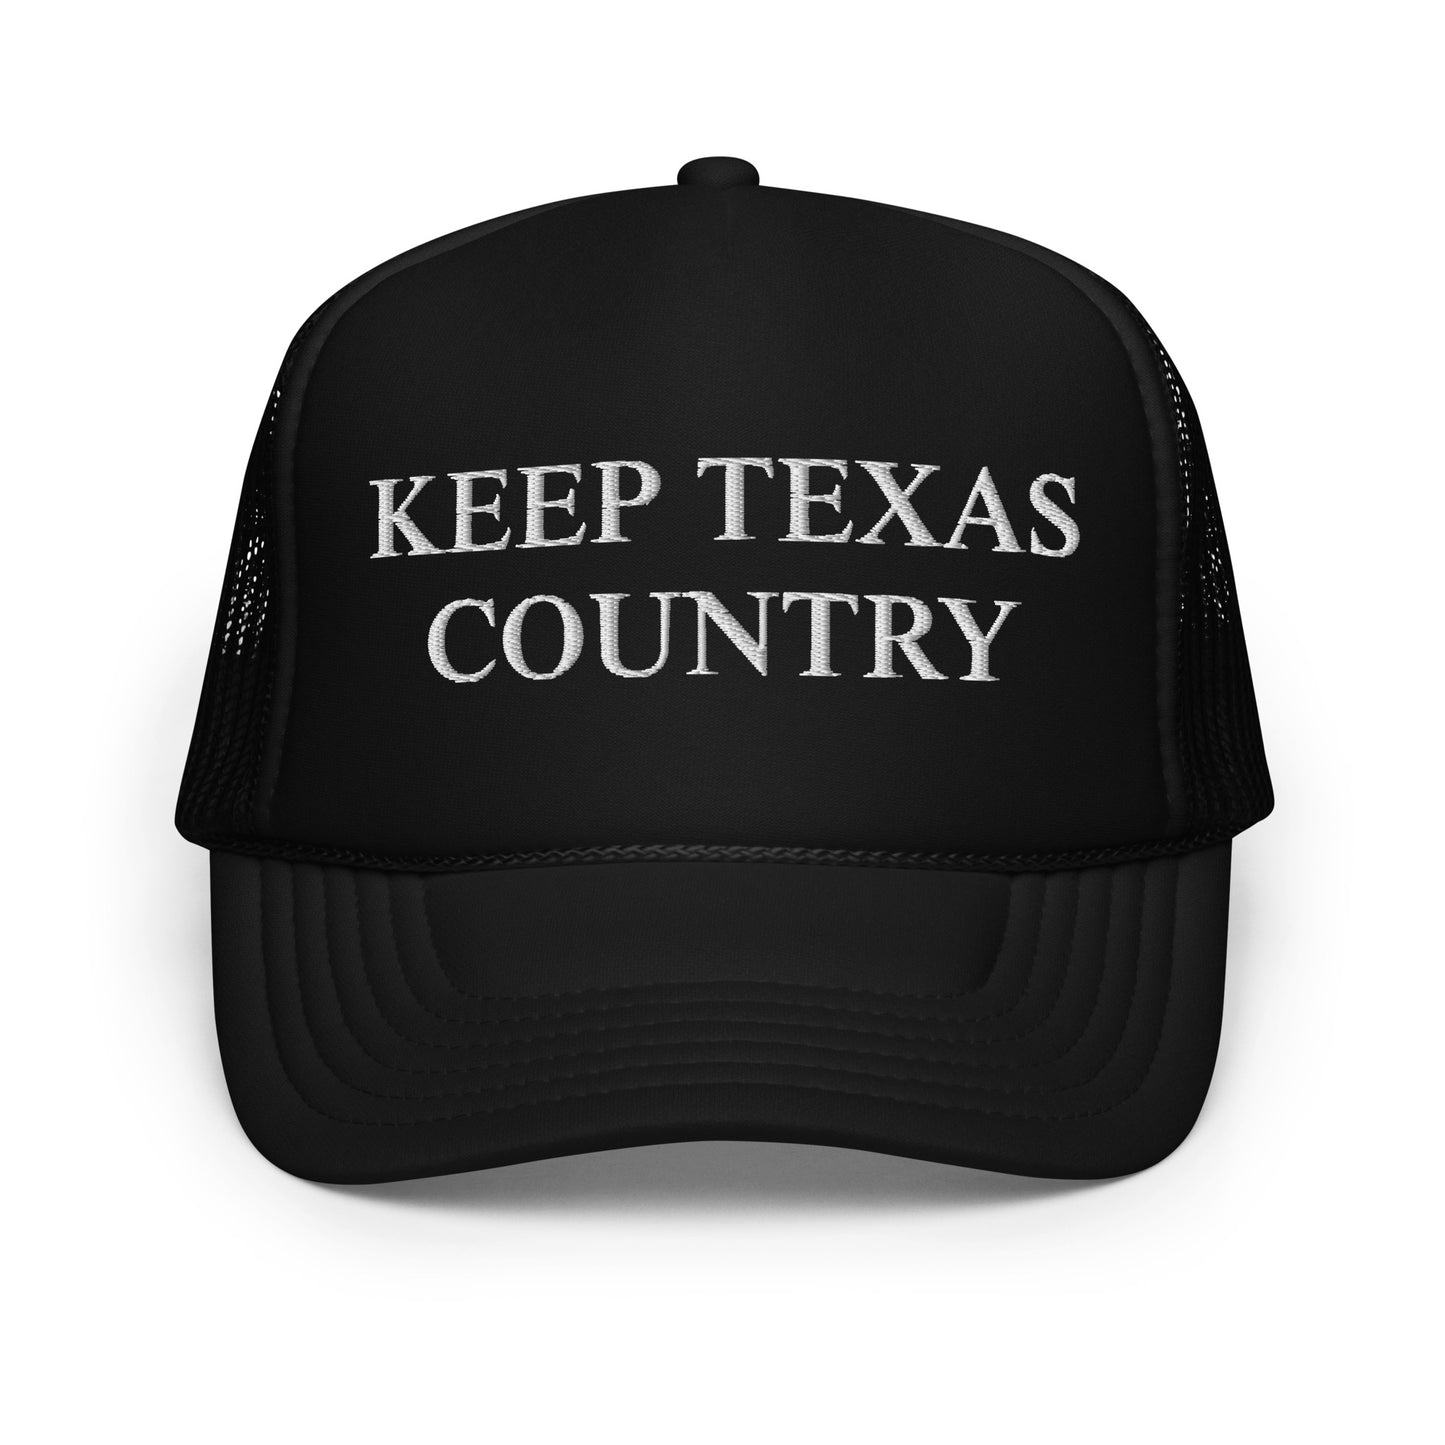 Keep Texas Country Foam trucker hat